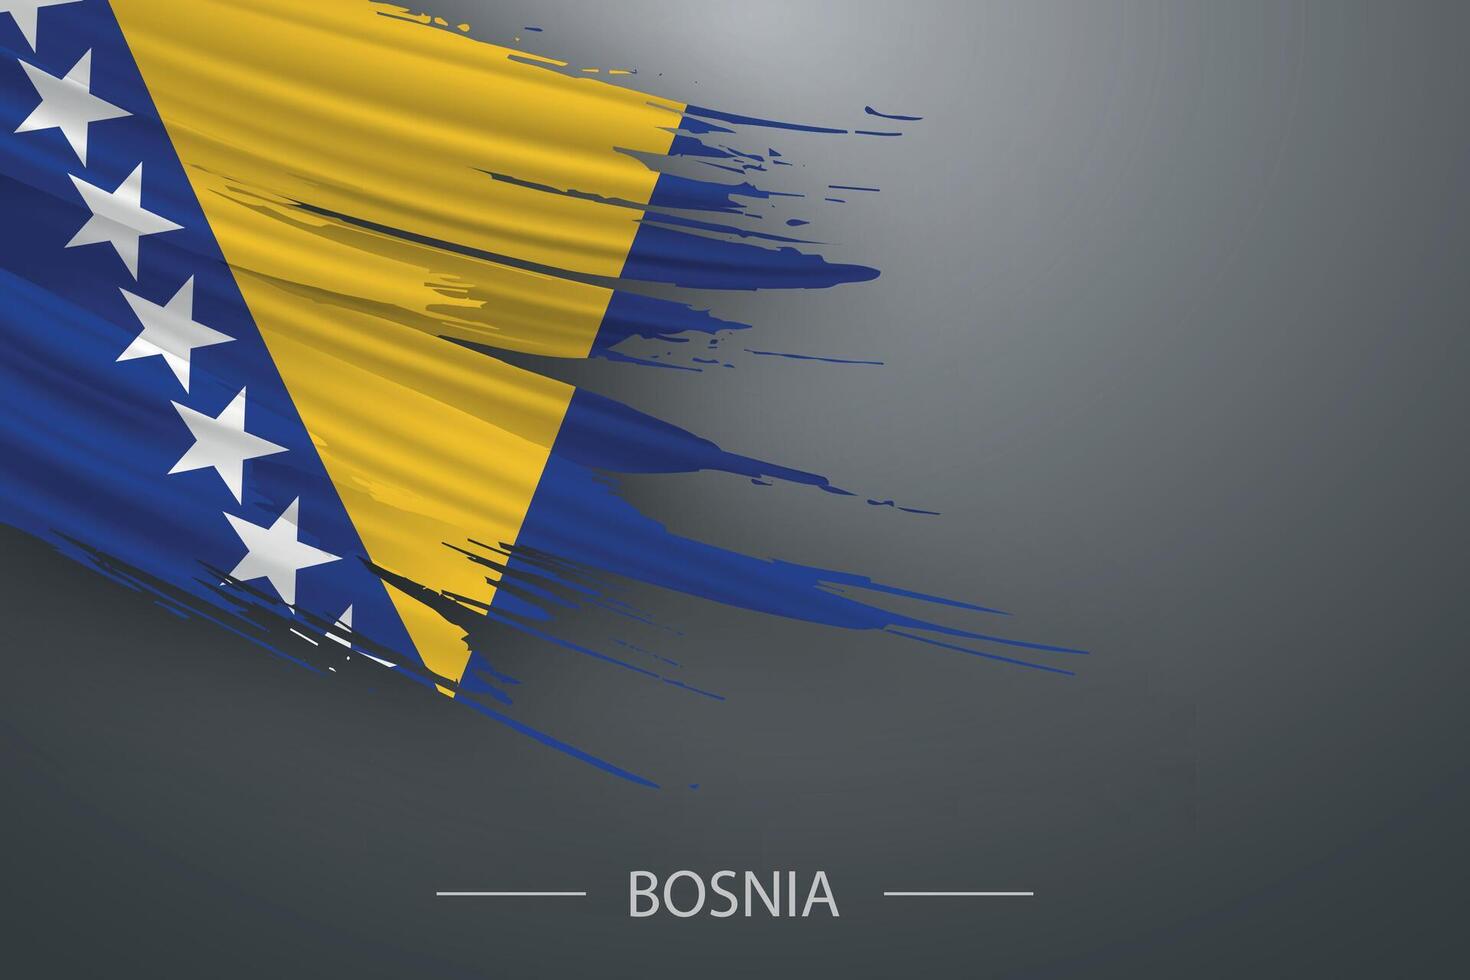 3d grunge brush stroke flag of Bosnia vector